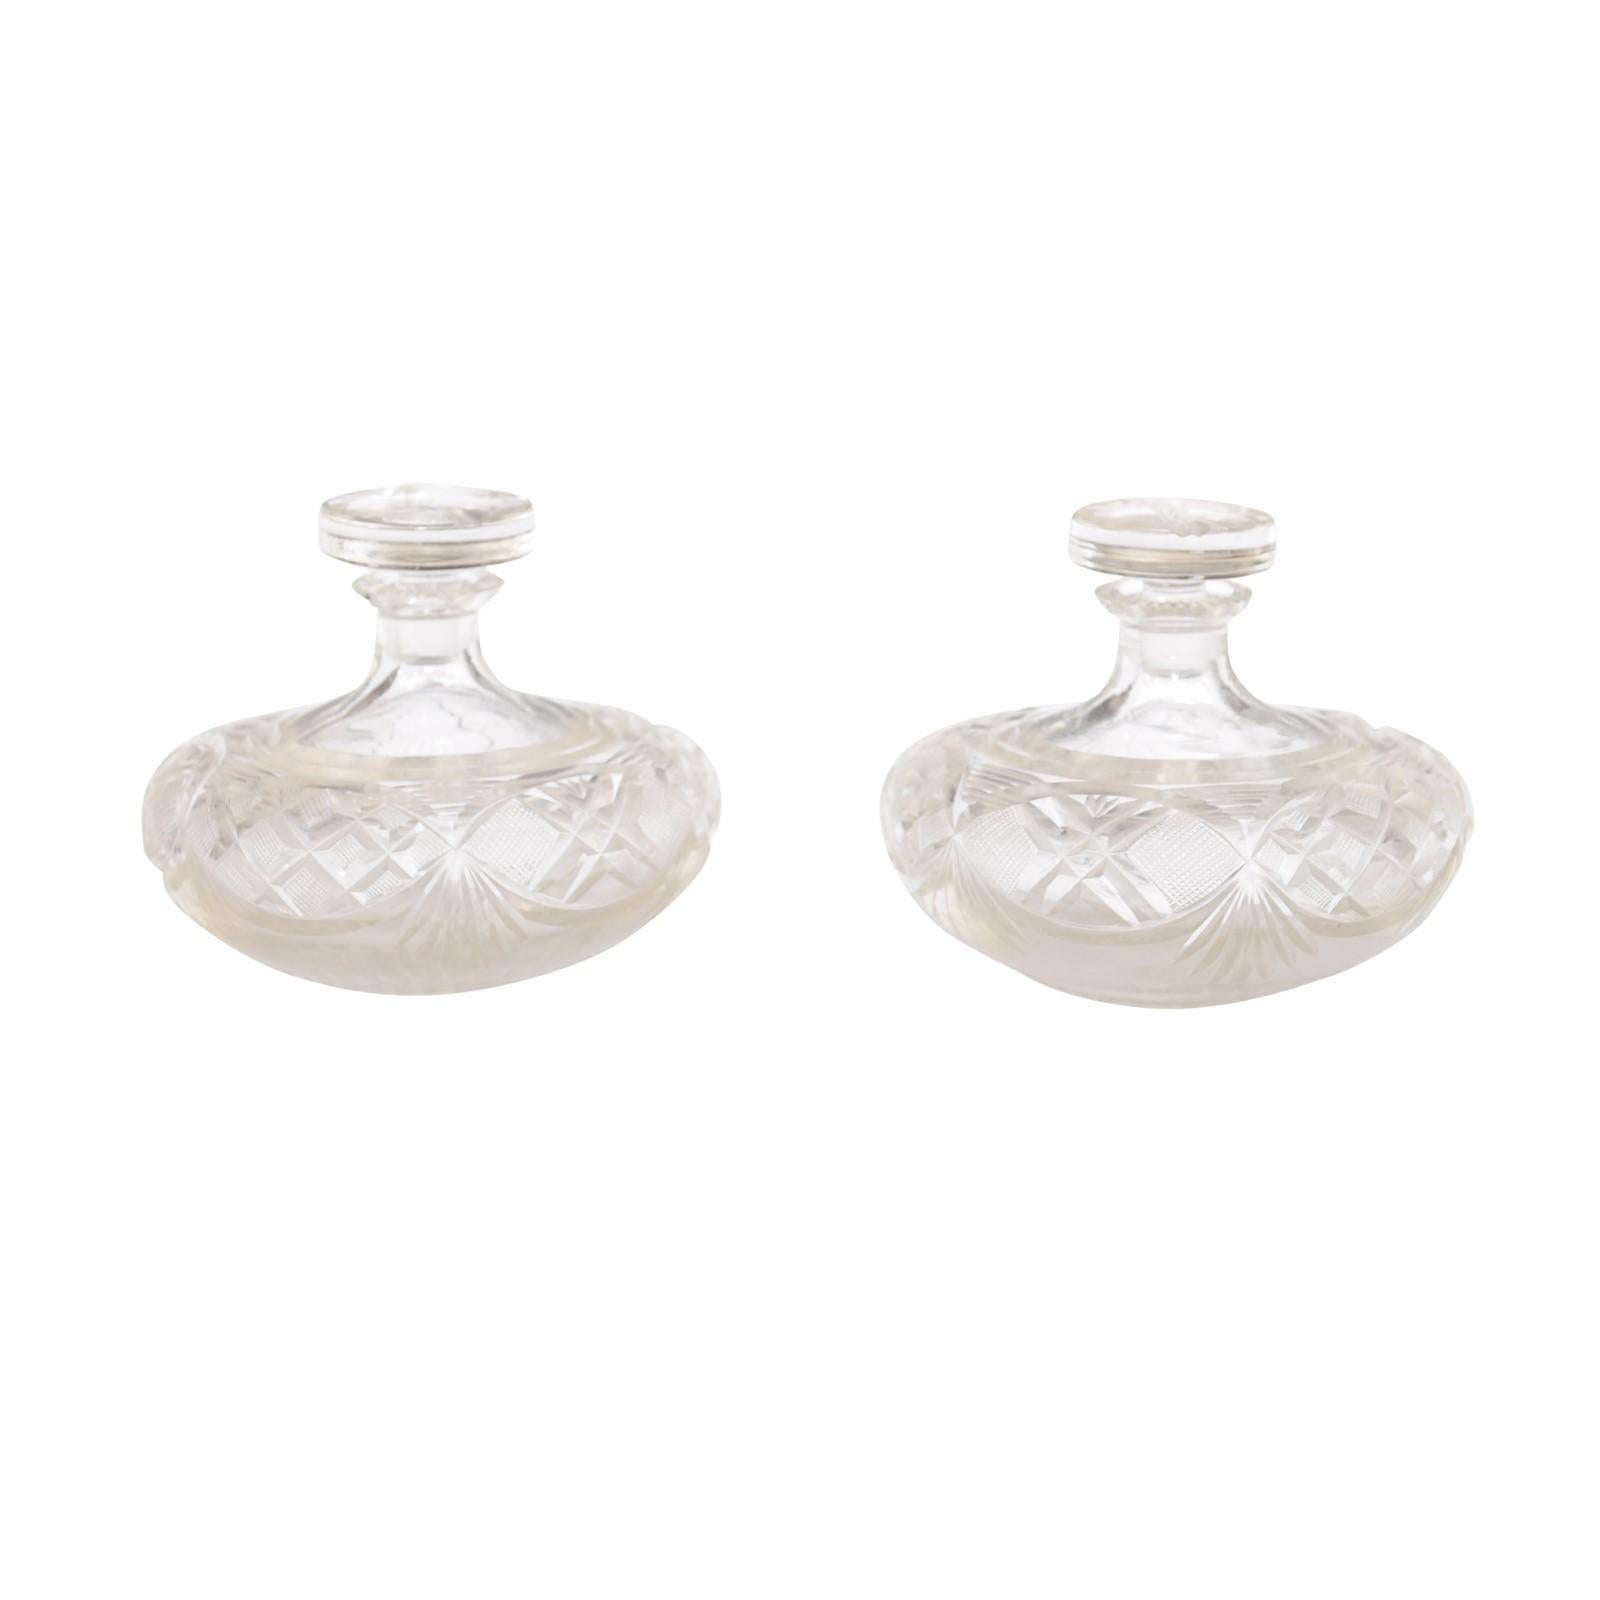 Ein Paar französischer Baccarat-Kristall-Parfümflaschen aus dem 19. Jahrhundert mit Stöpseln und ausgeschnittenen Motiven. Ein Paar französischer Baccarat-Kristall-Parfümflakons aus dem 19. Jahrhundert, die mit ihren exquisiten, durchbrochenen